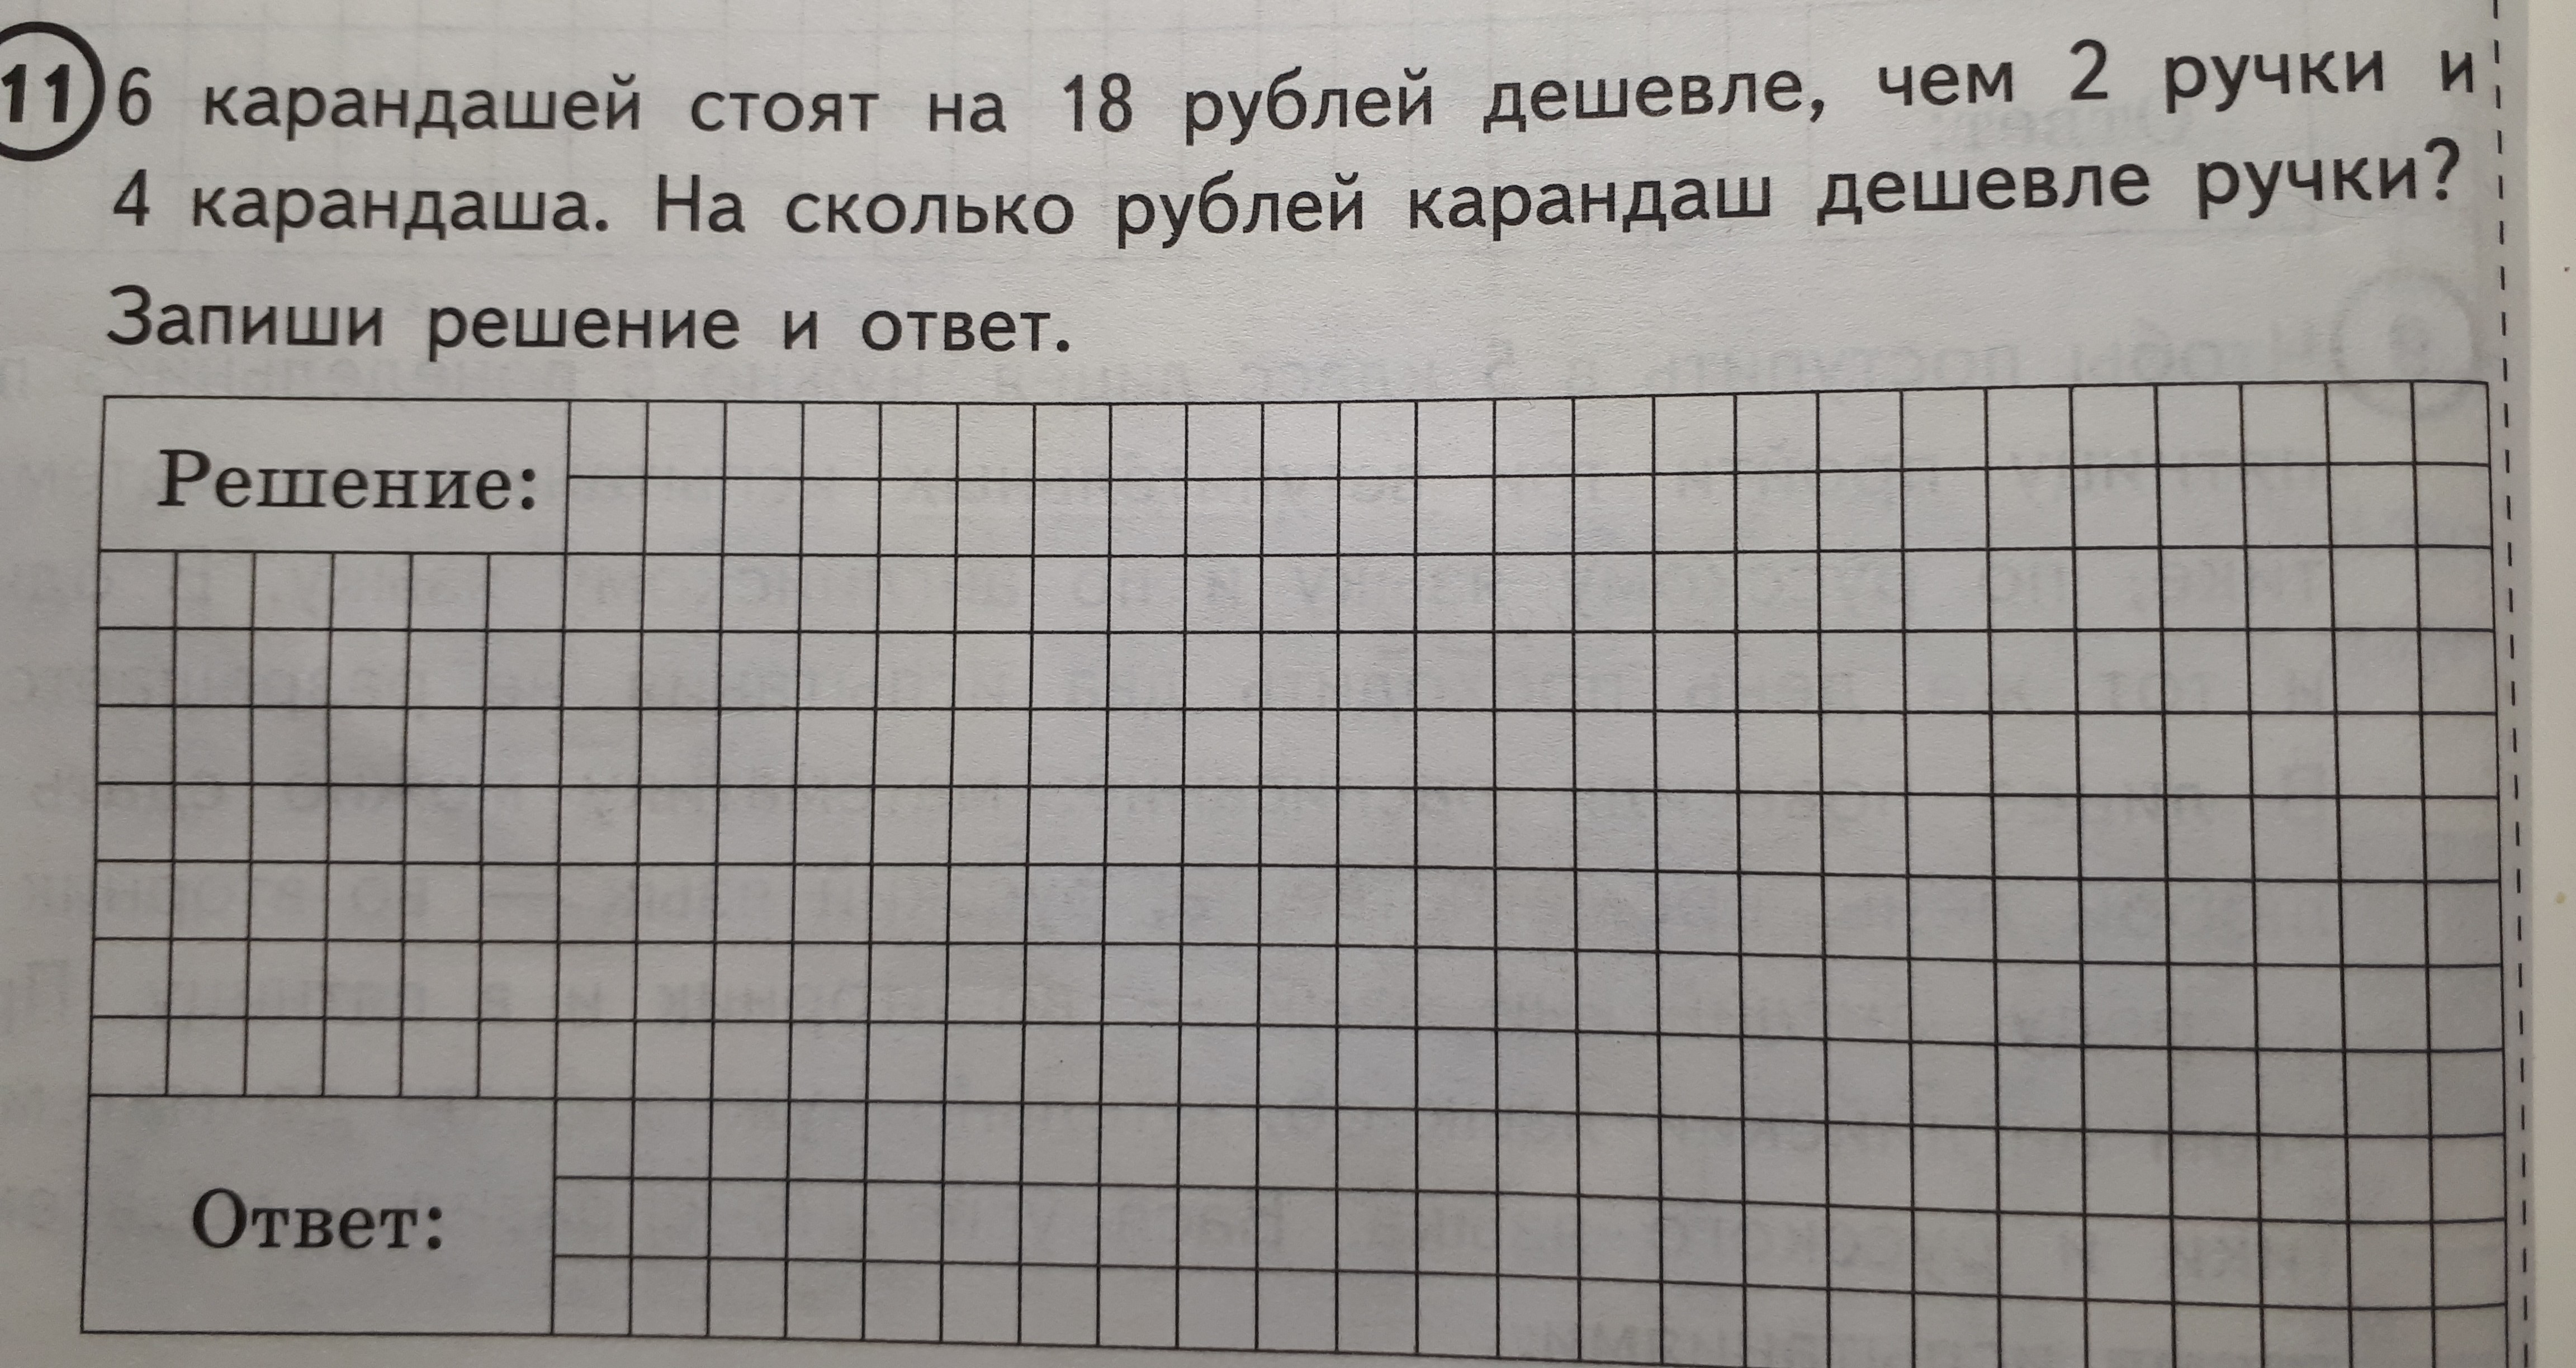 5 карандашей на 15 рублей дешевле. 6 Карандашей стоят. 6 Карандашей стоят на 18 рублей. Задача про карандаши. Решение задачи с карандашами.